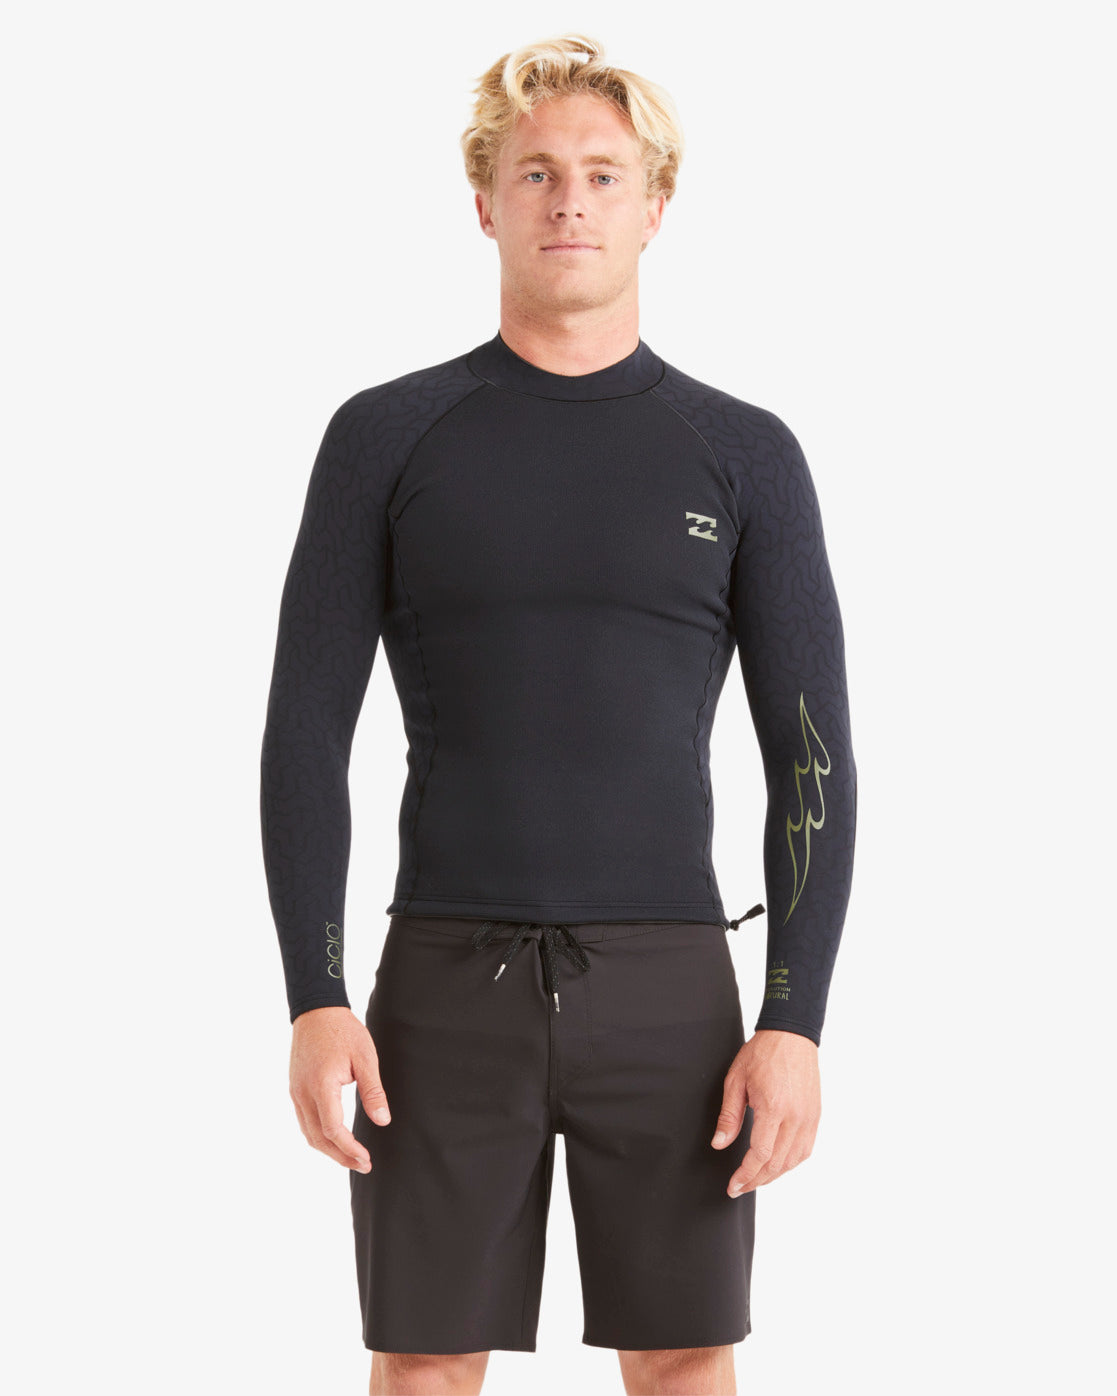 Mens Wetsuit Guide – Billabong